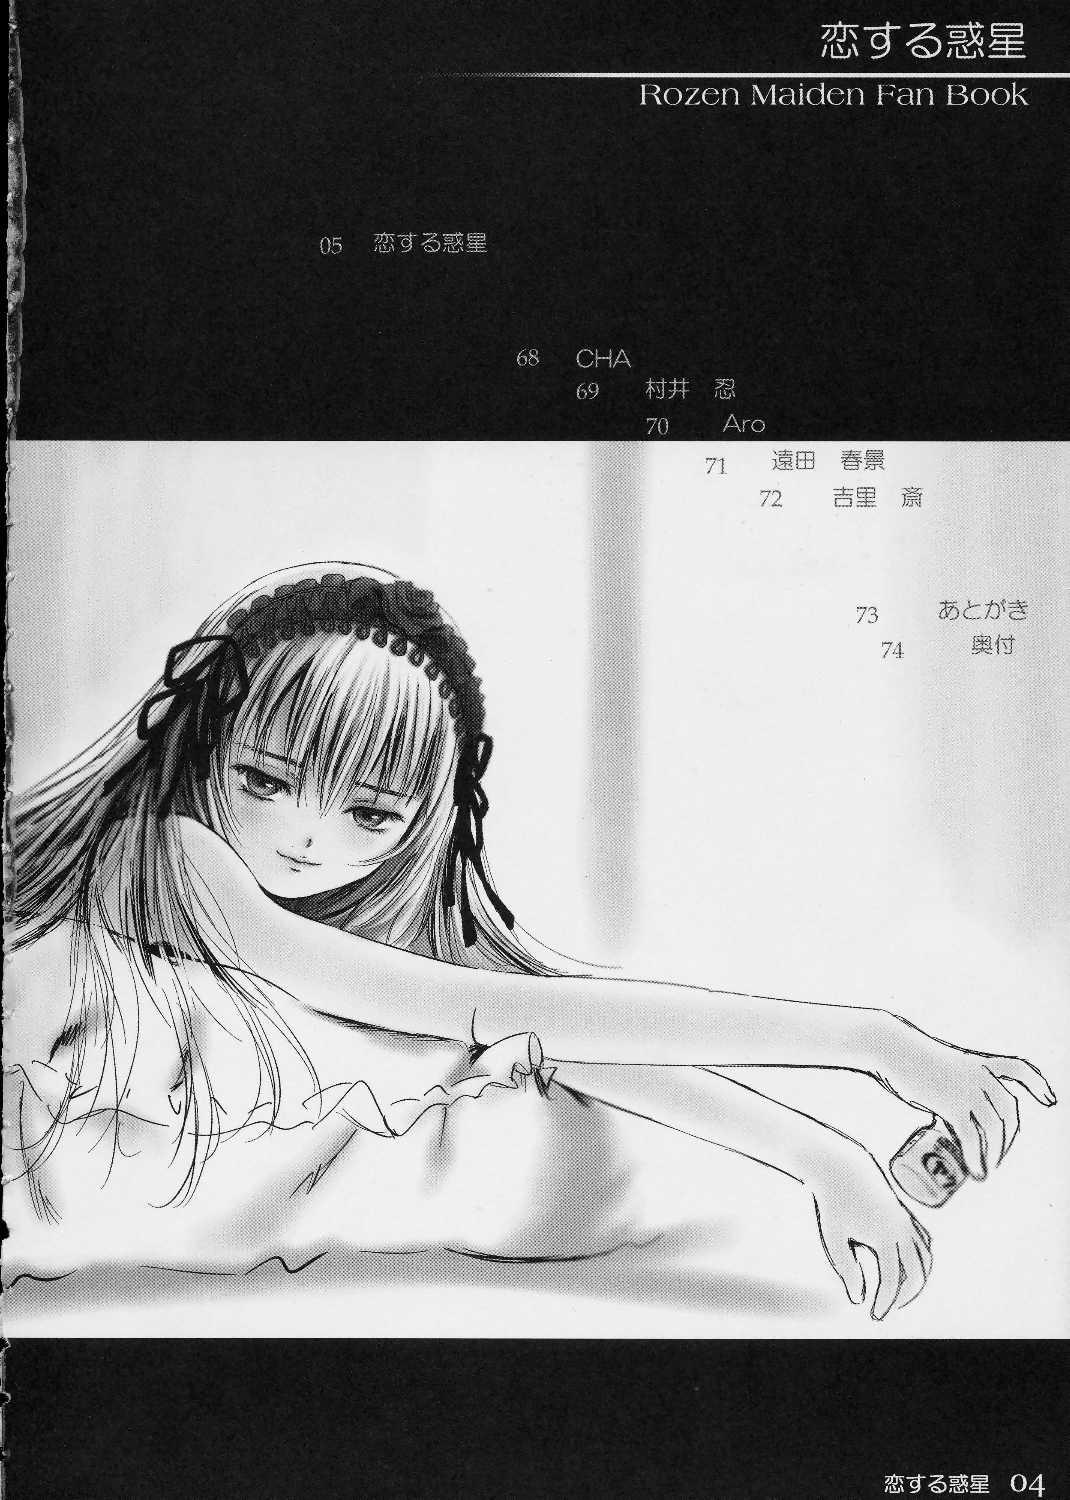 [charm] koisuru wakusei 2 (rosen maiden) (同人誌) [charm] 恋する惑星2 (ローゼンメイデン)